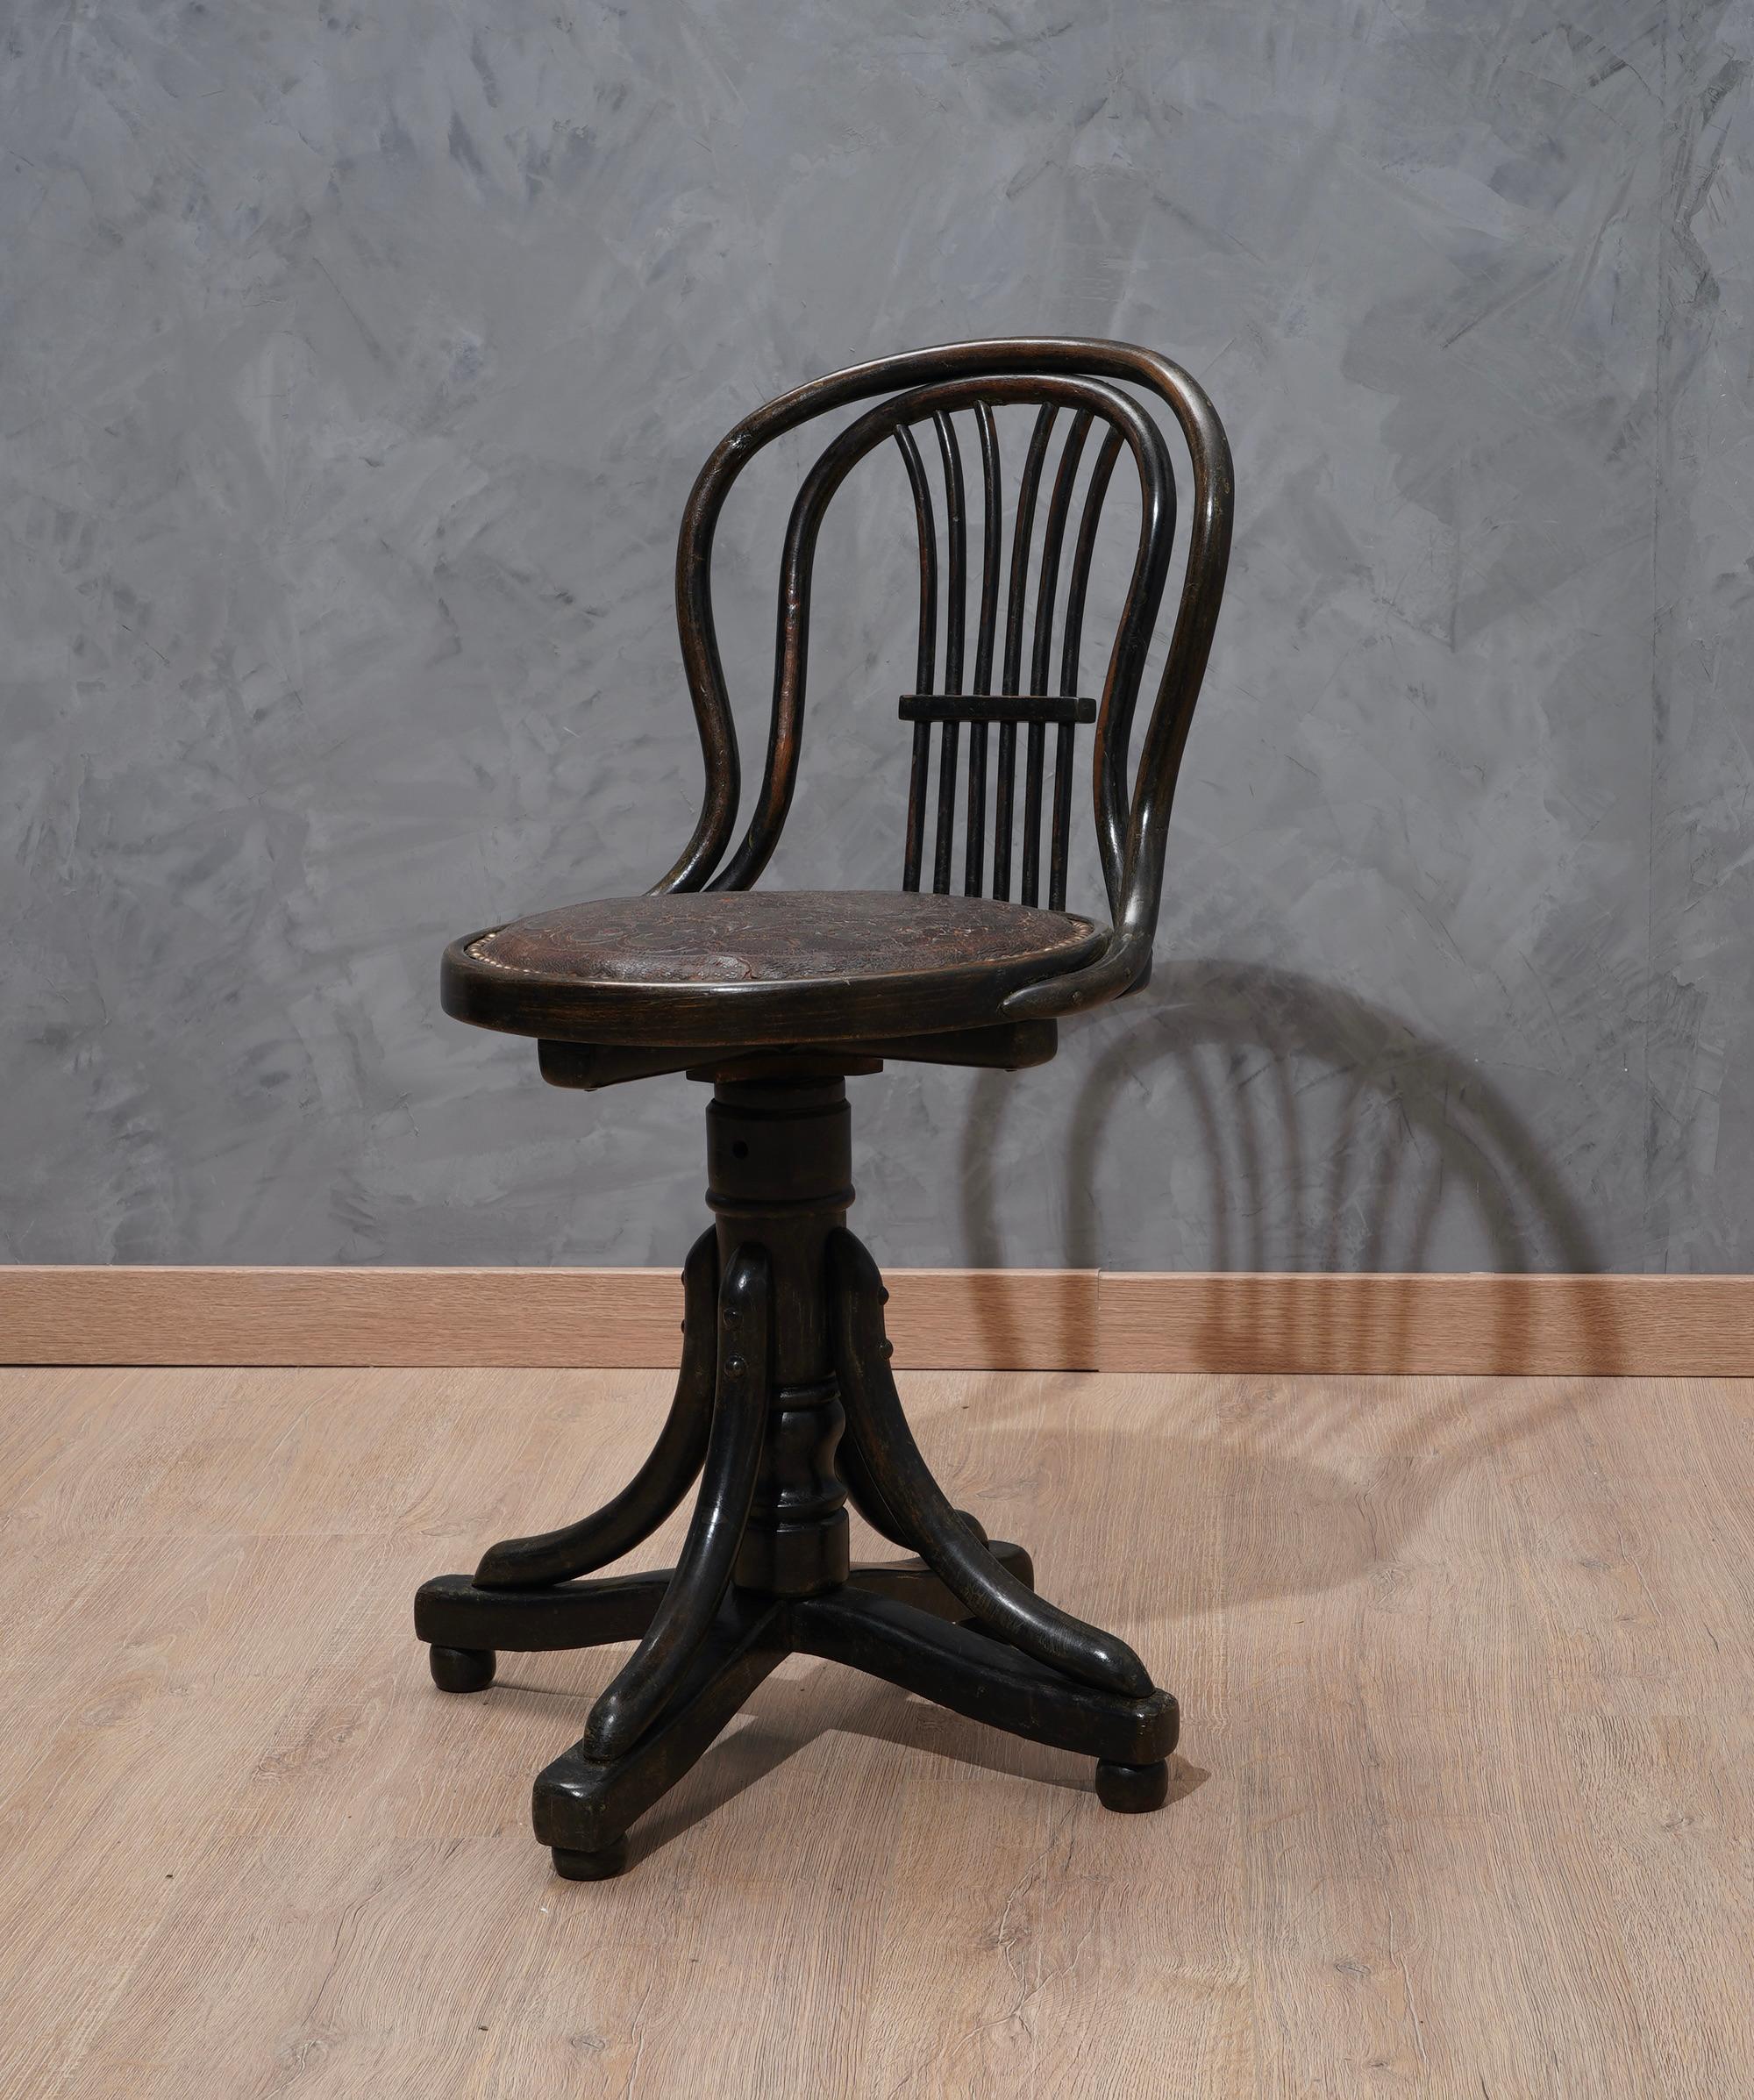 Thonet Drehstuhl für Klavier vom Ende des 19. Jahrhunderts.

Der Stuhl aus gebogenem Holz ist ganz aus Holz und mit schwarzem Schellack poliert. Der runde Sitz ist noch mit dem Originalleder bezogen und rundum mit Metallknöpfen versehen. Die